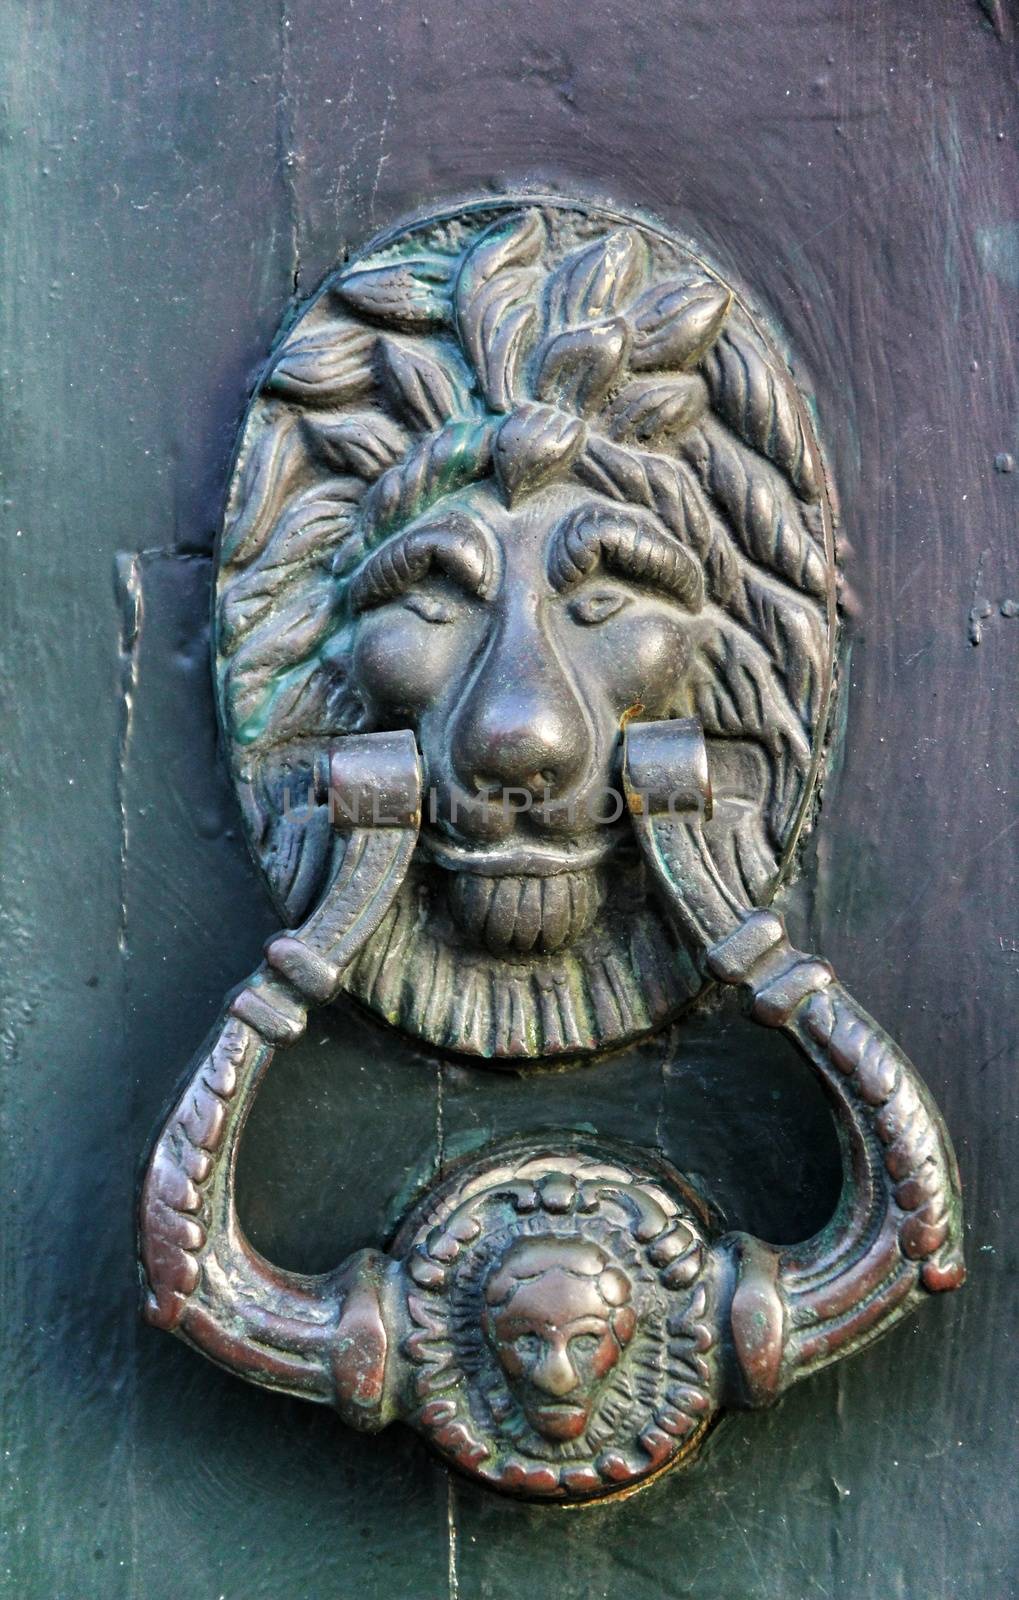 Vintage door knocker on green wooden door in Portugal